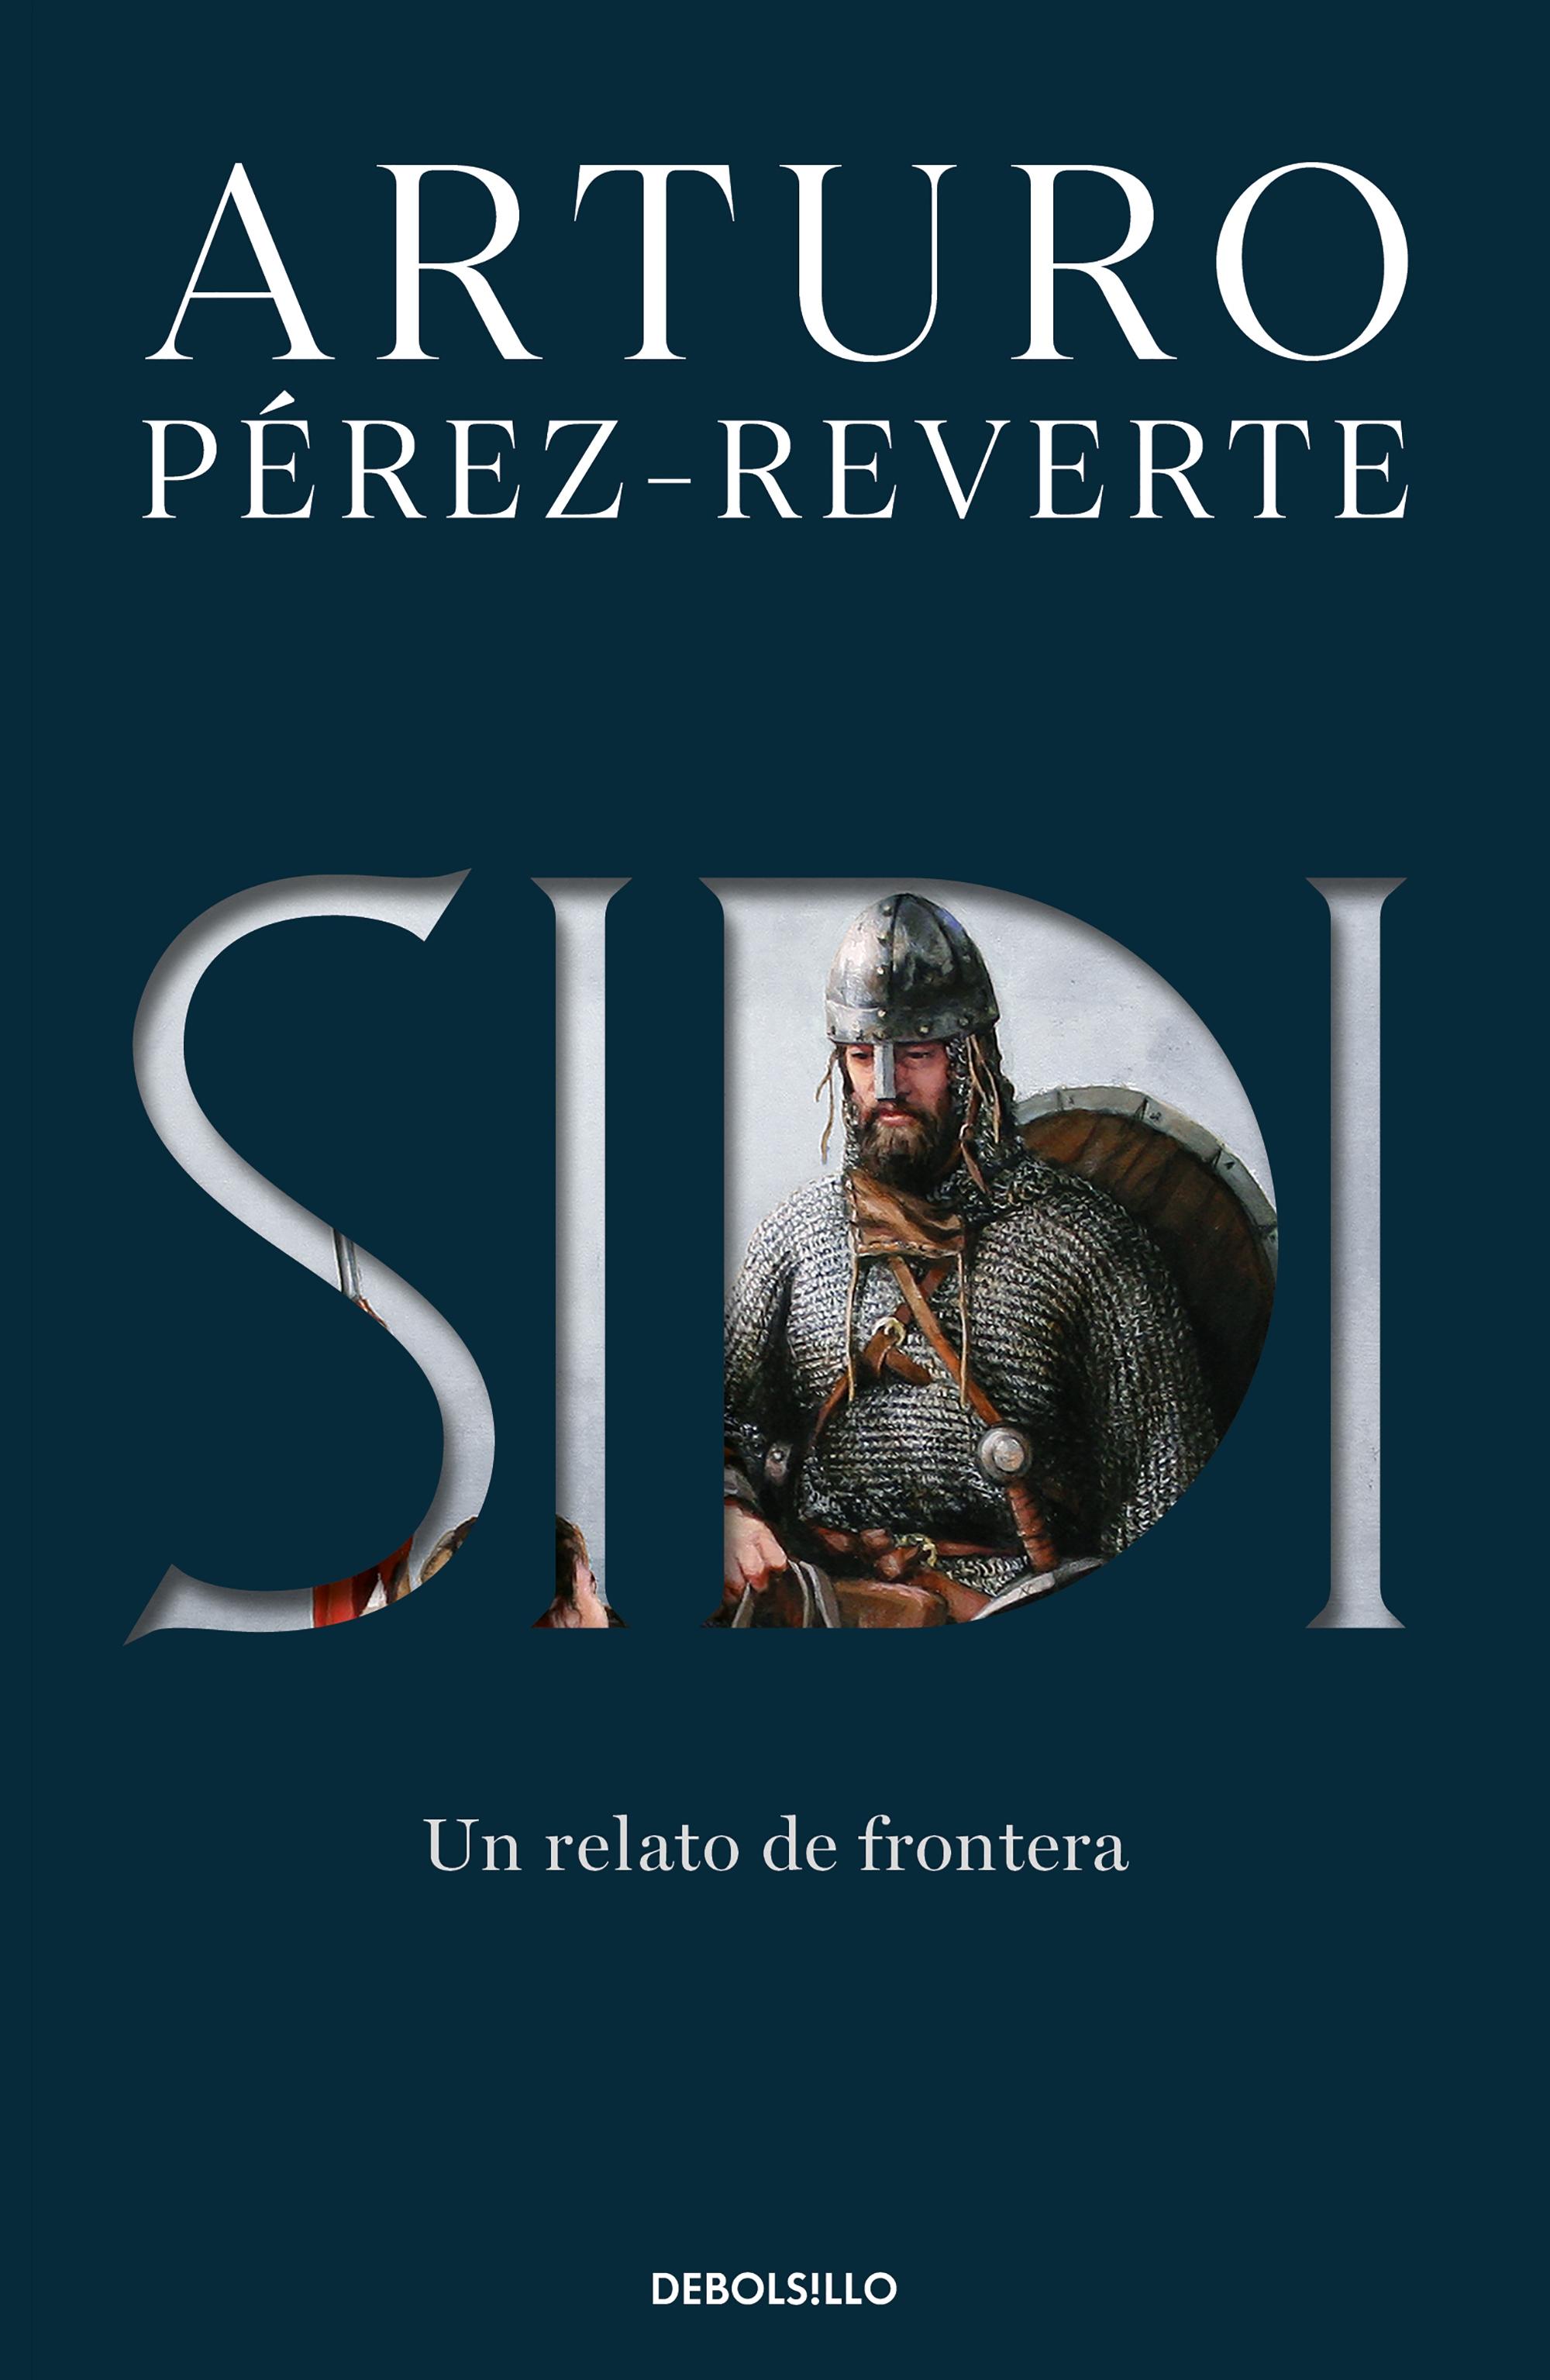 Sidi (Bolsillo) "Un relato de frontera". 